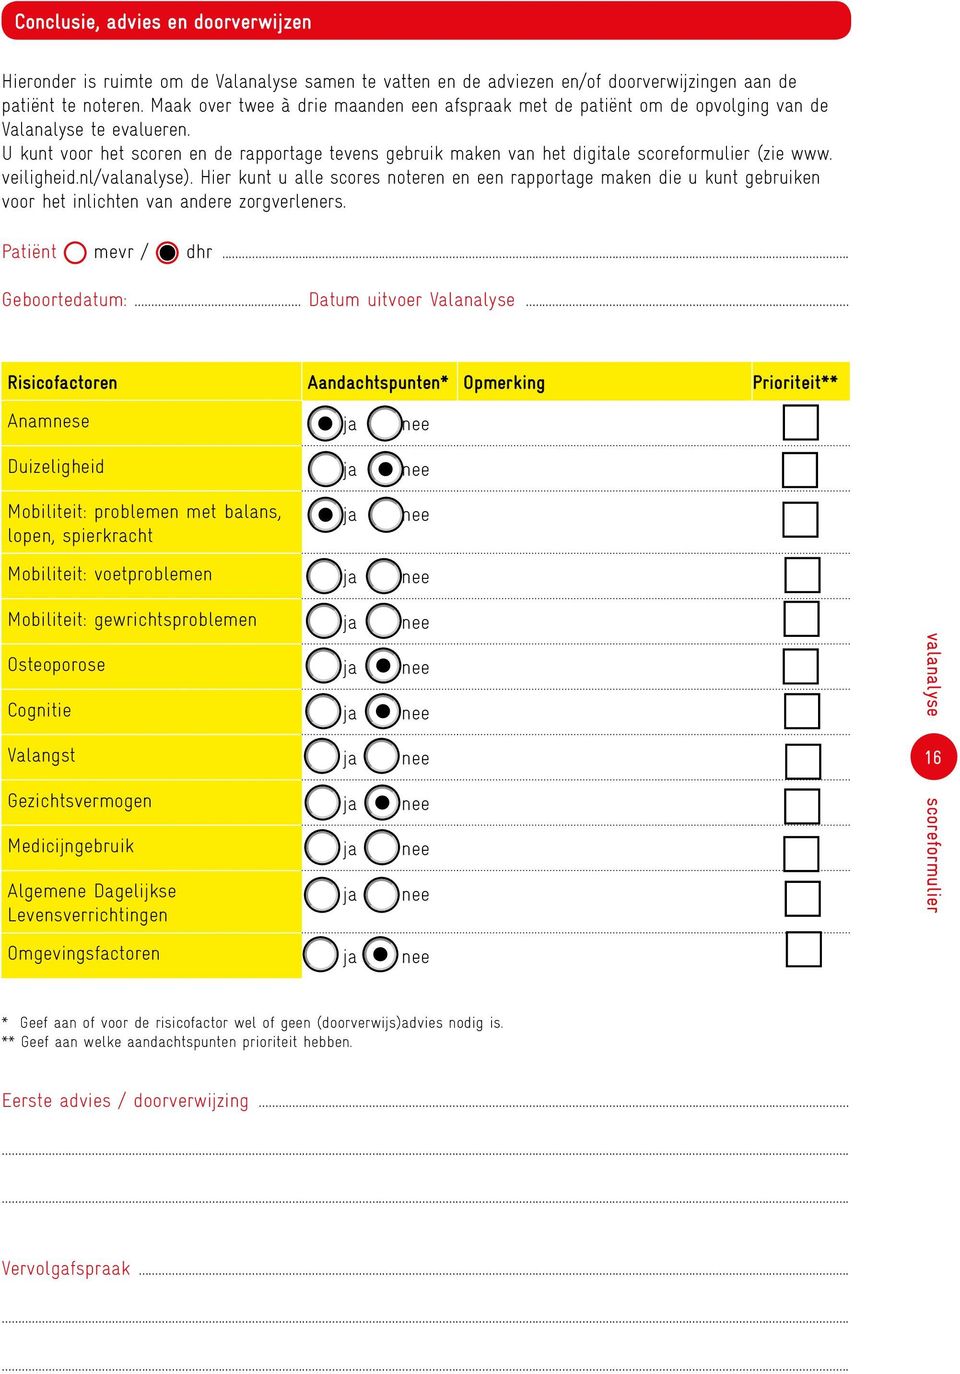 U kunt voor het scoren en de rapportage tevens gebruik maken van het digitale scoreformulier (zie www. veiligheid.nl/valanalyse).